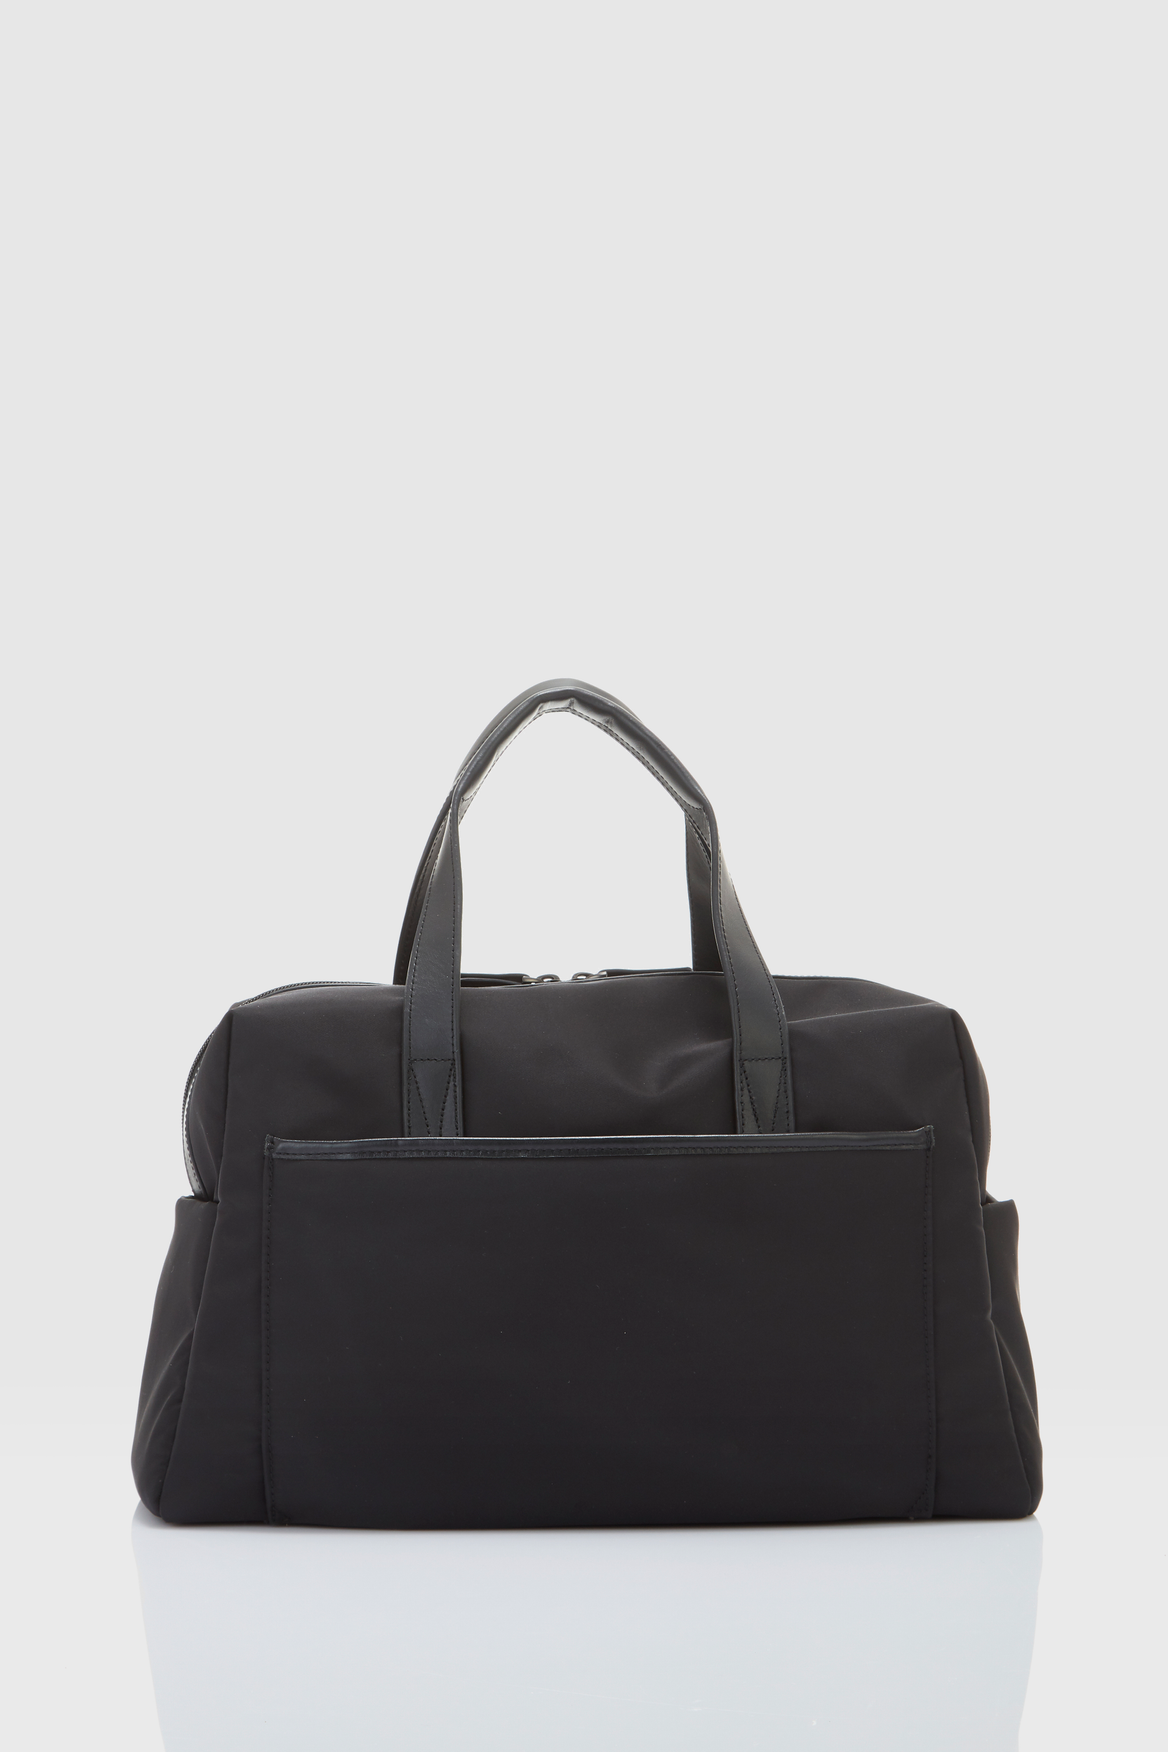 Antler Chelsea Overnight Bag – Strandbags Australia